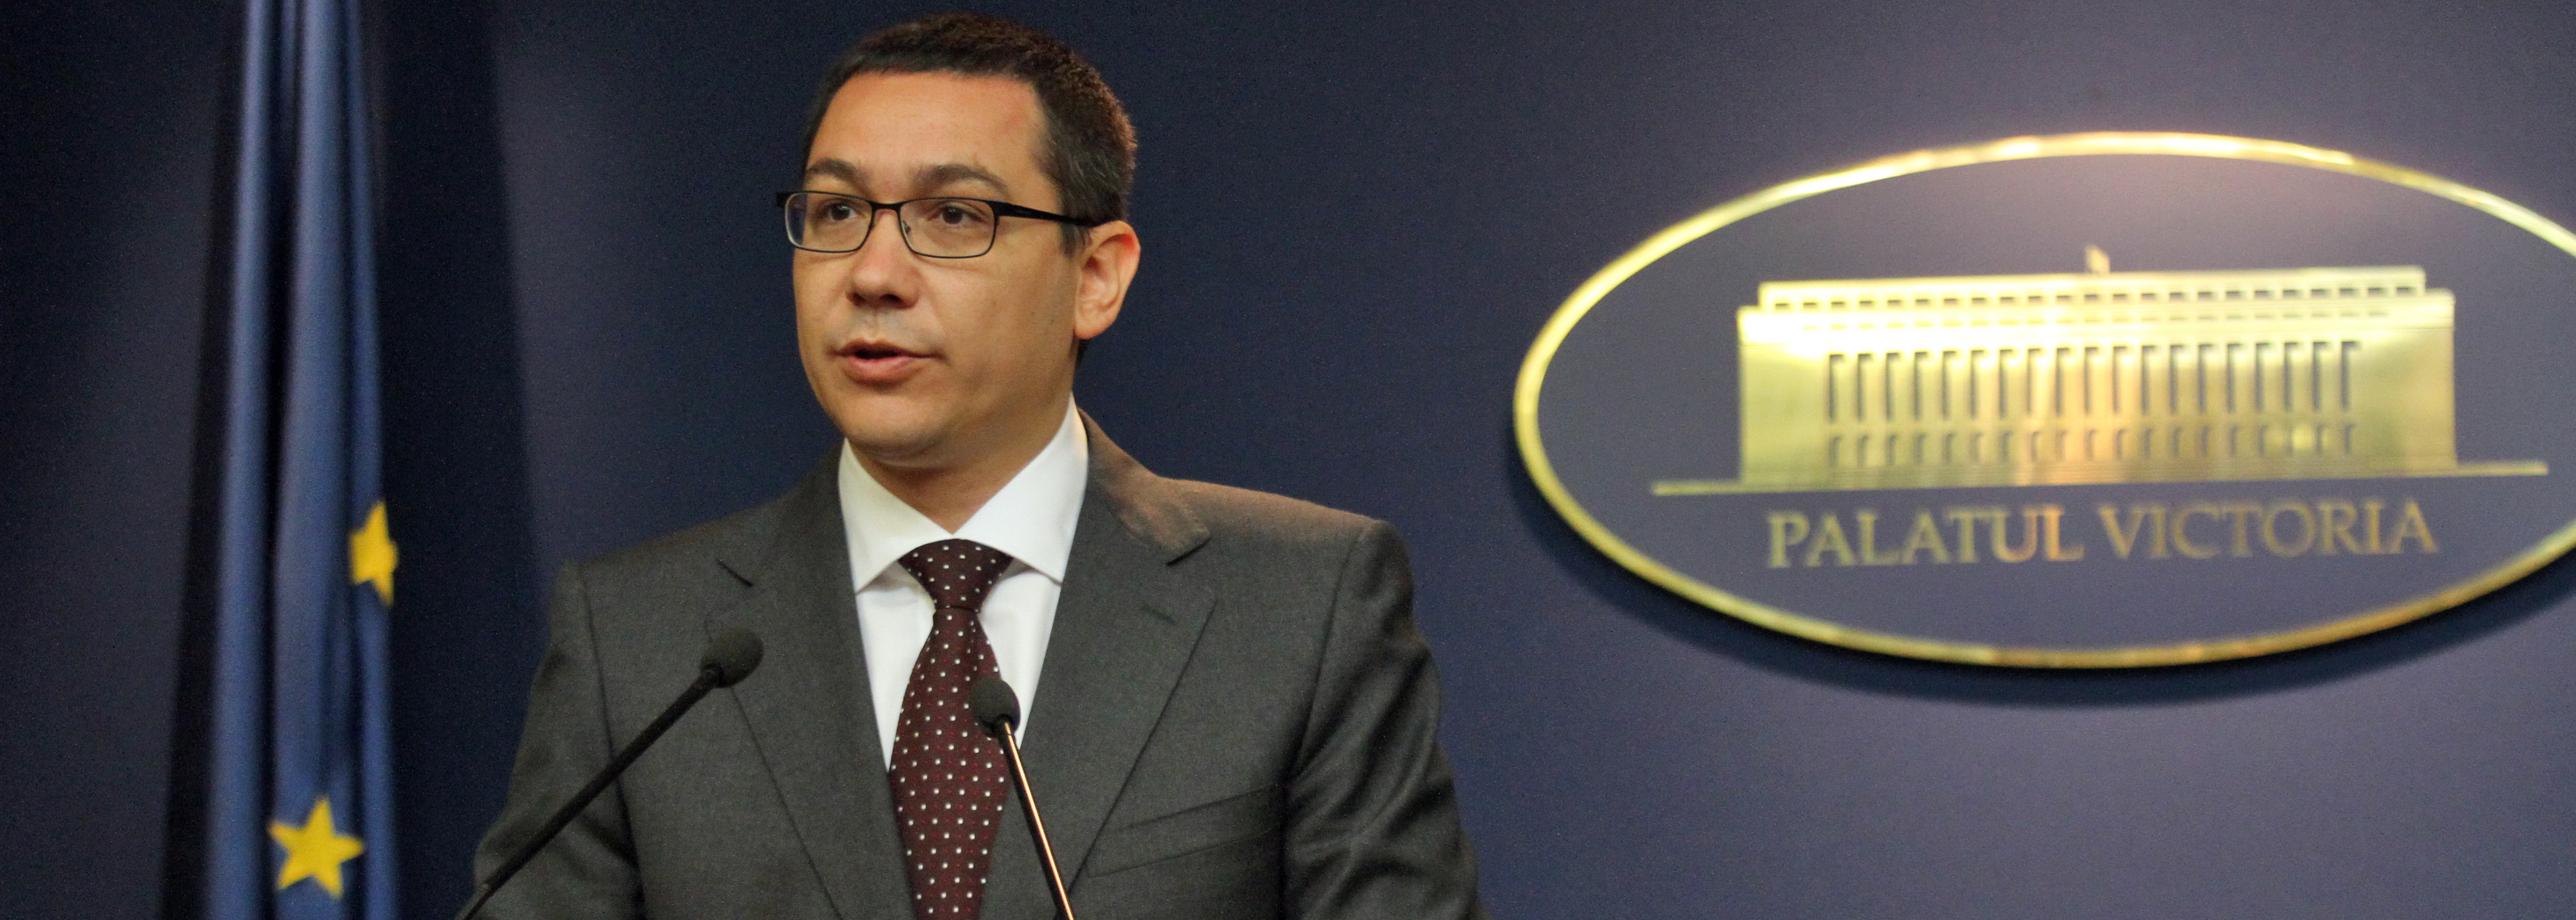 Victor Ponta: Kover Laszlo nu este un prieten si nu este binevenit in Romania